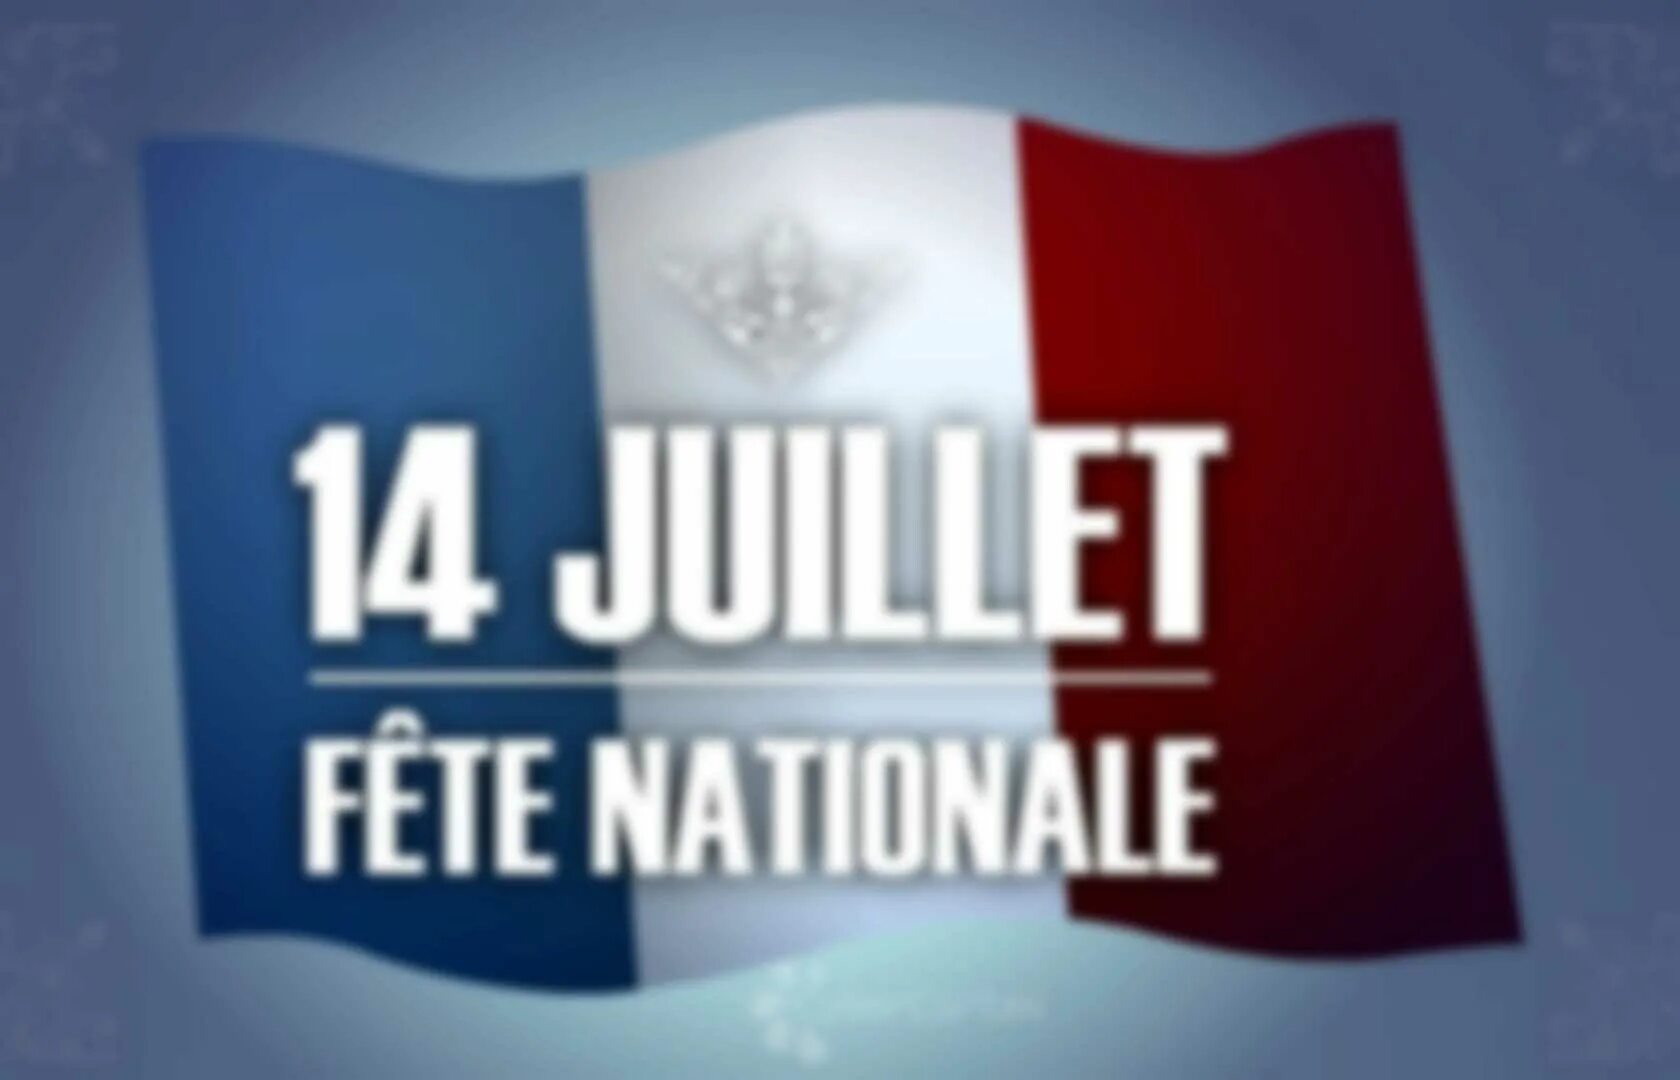 Est la fete. 14 Juillet. Fete nationale картинки. Les fetes en France презентация. Le 14 juillet c'est la fete nationale en France картинки.